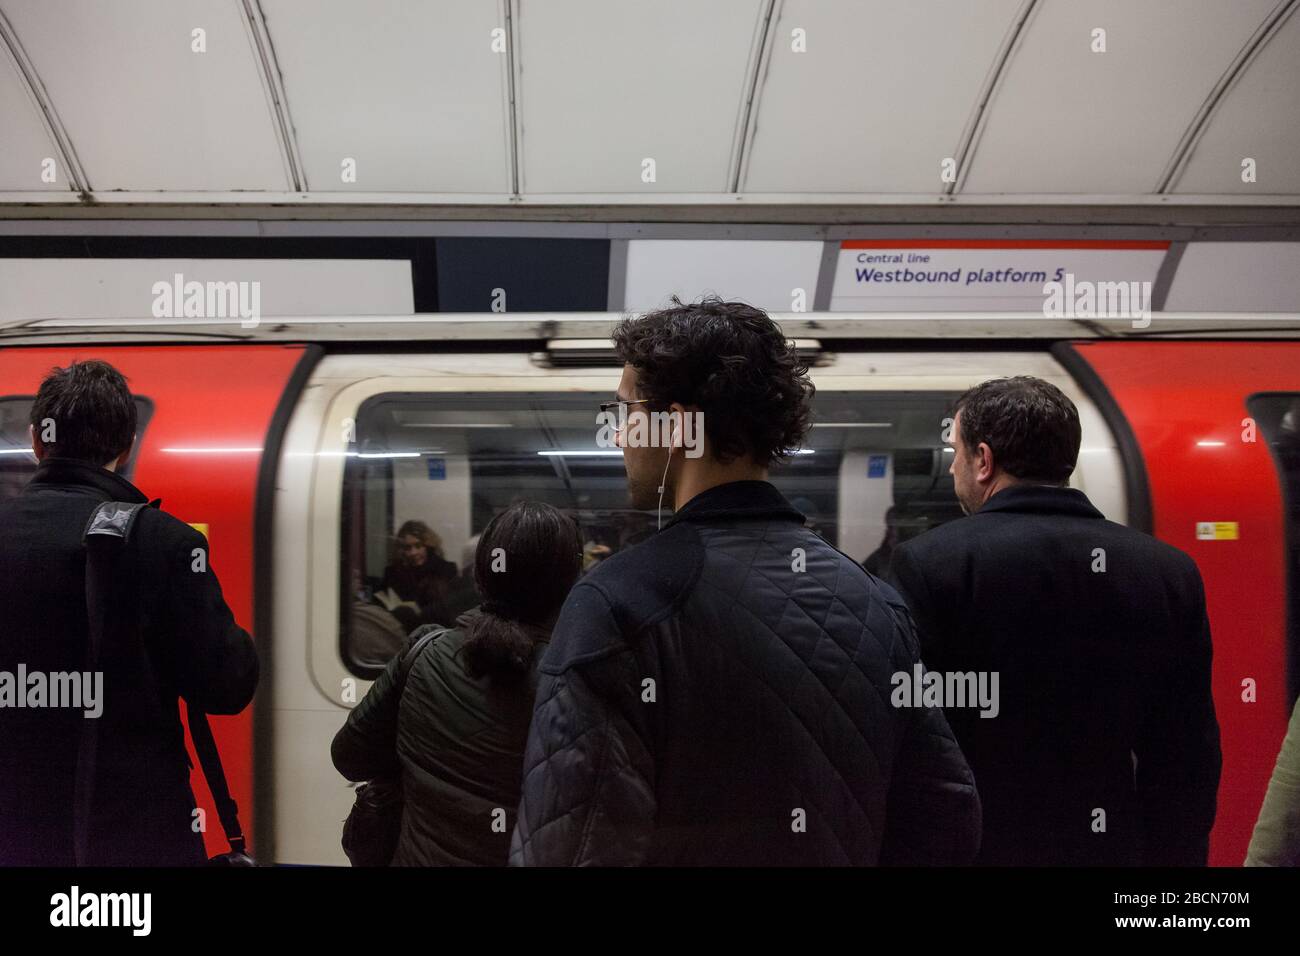 La gente aspetta sulla piattaforma di una Central Line London Underground, stazione quando arriva un treno in metropolitana. Londra, Regno Unito. Foto Stock